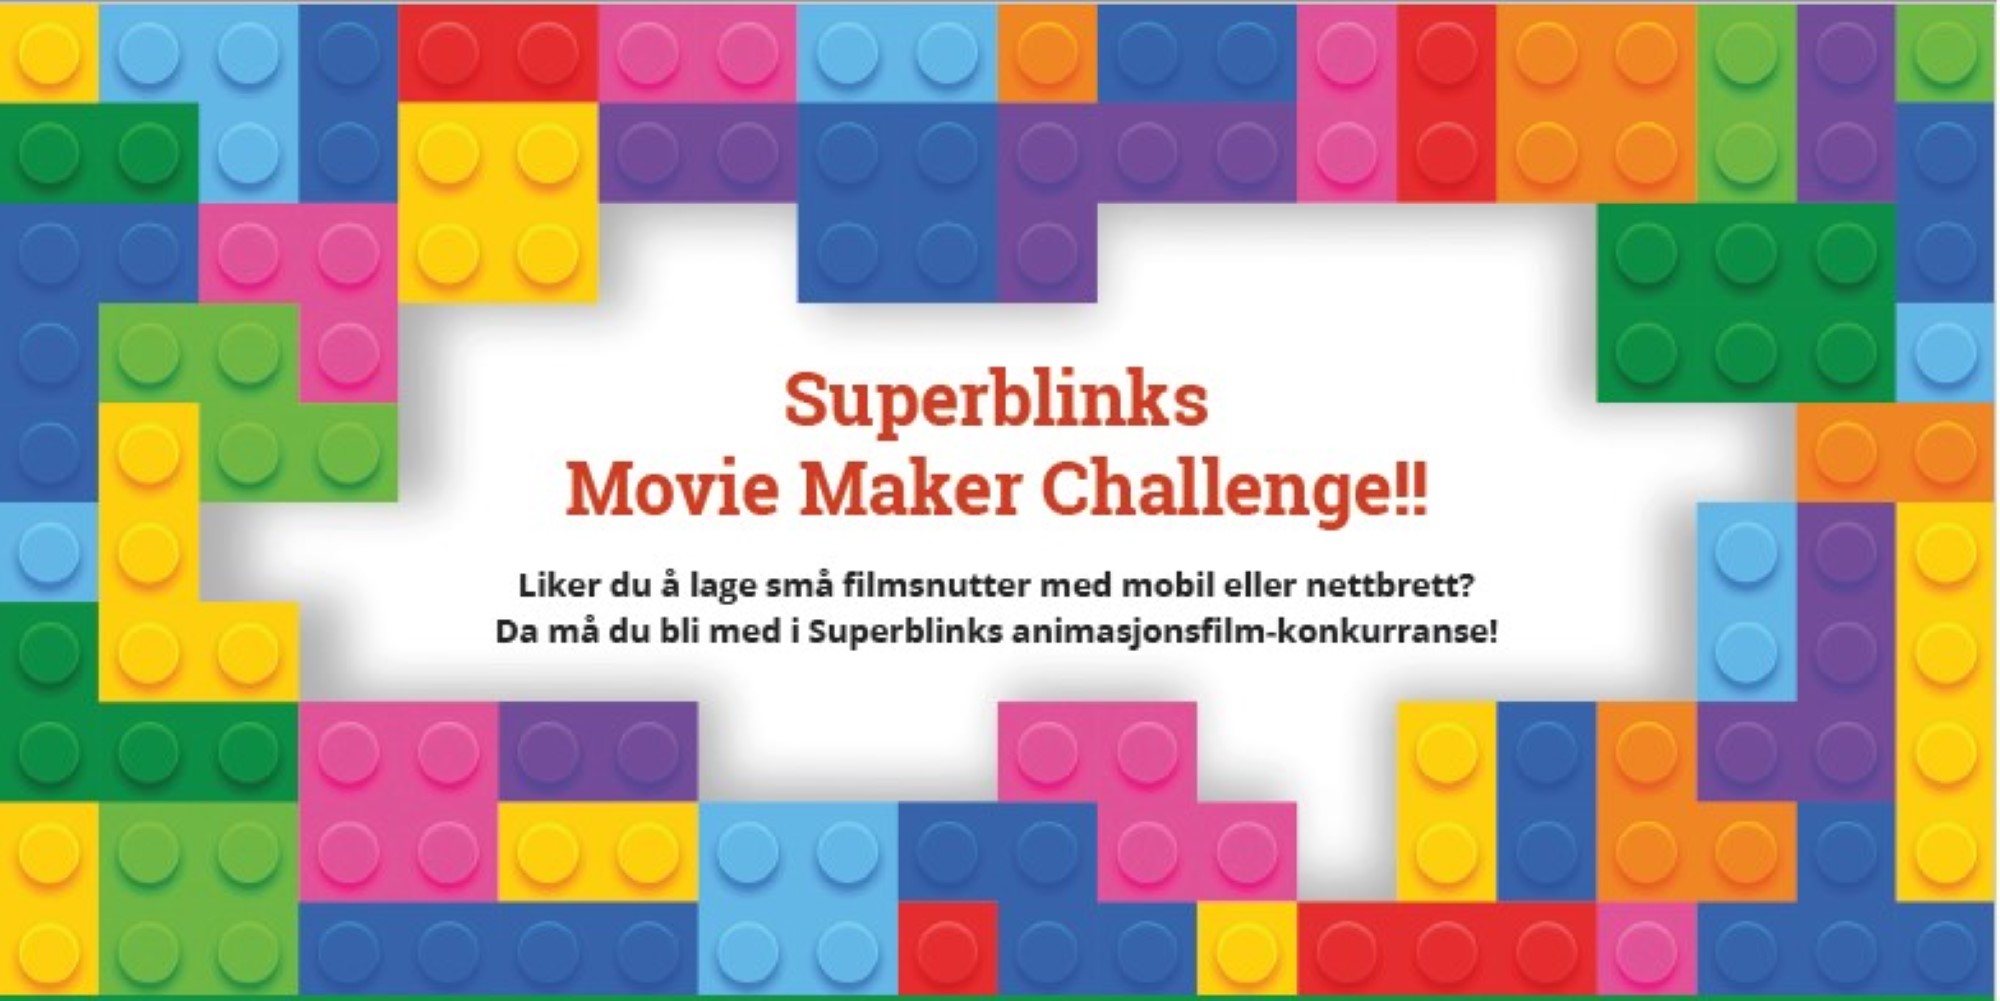 Superblnk movie maker challenge